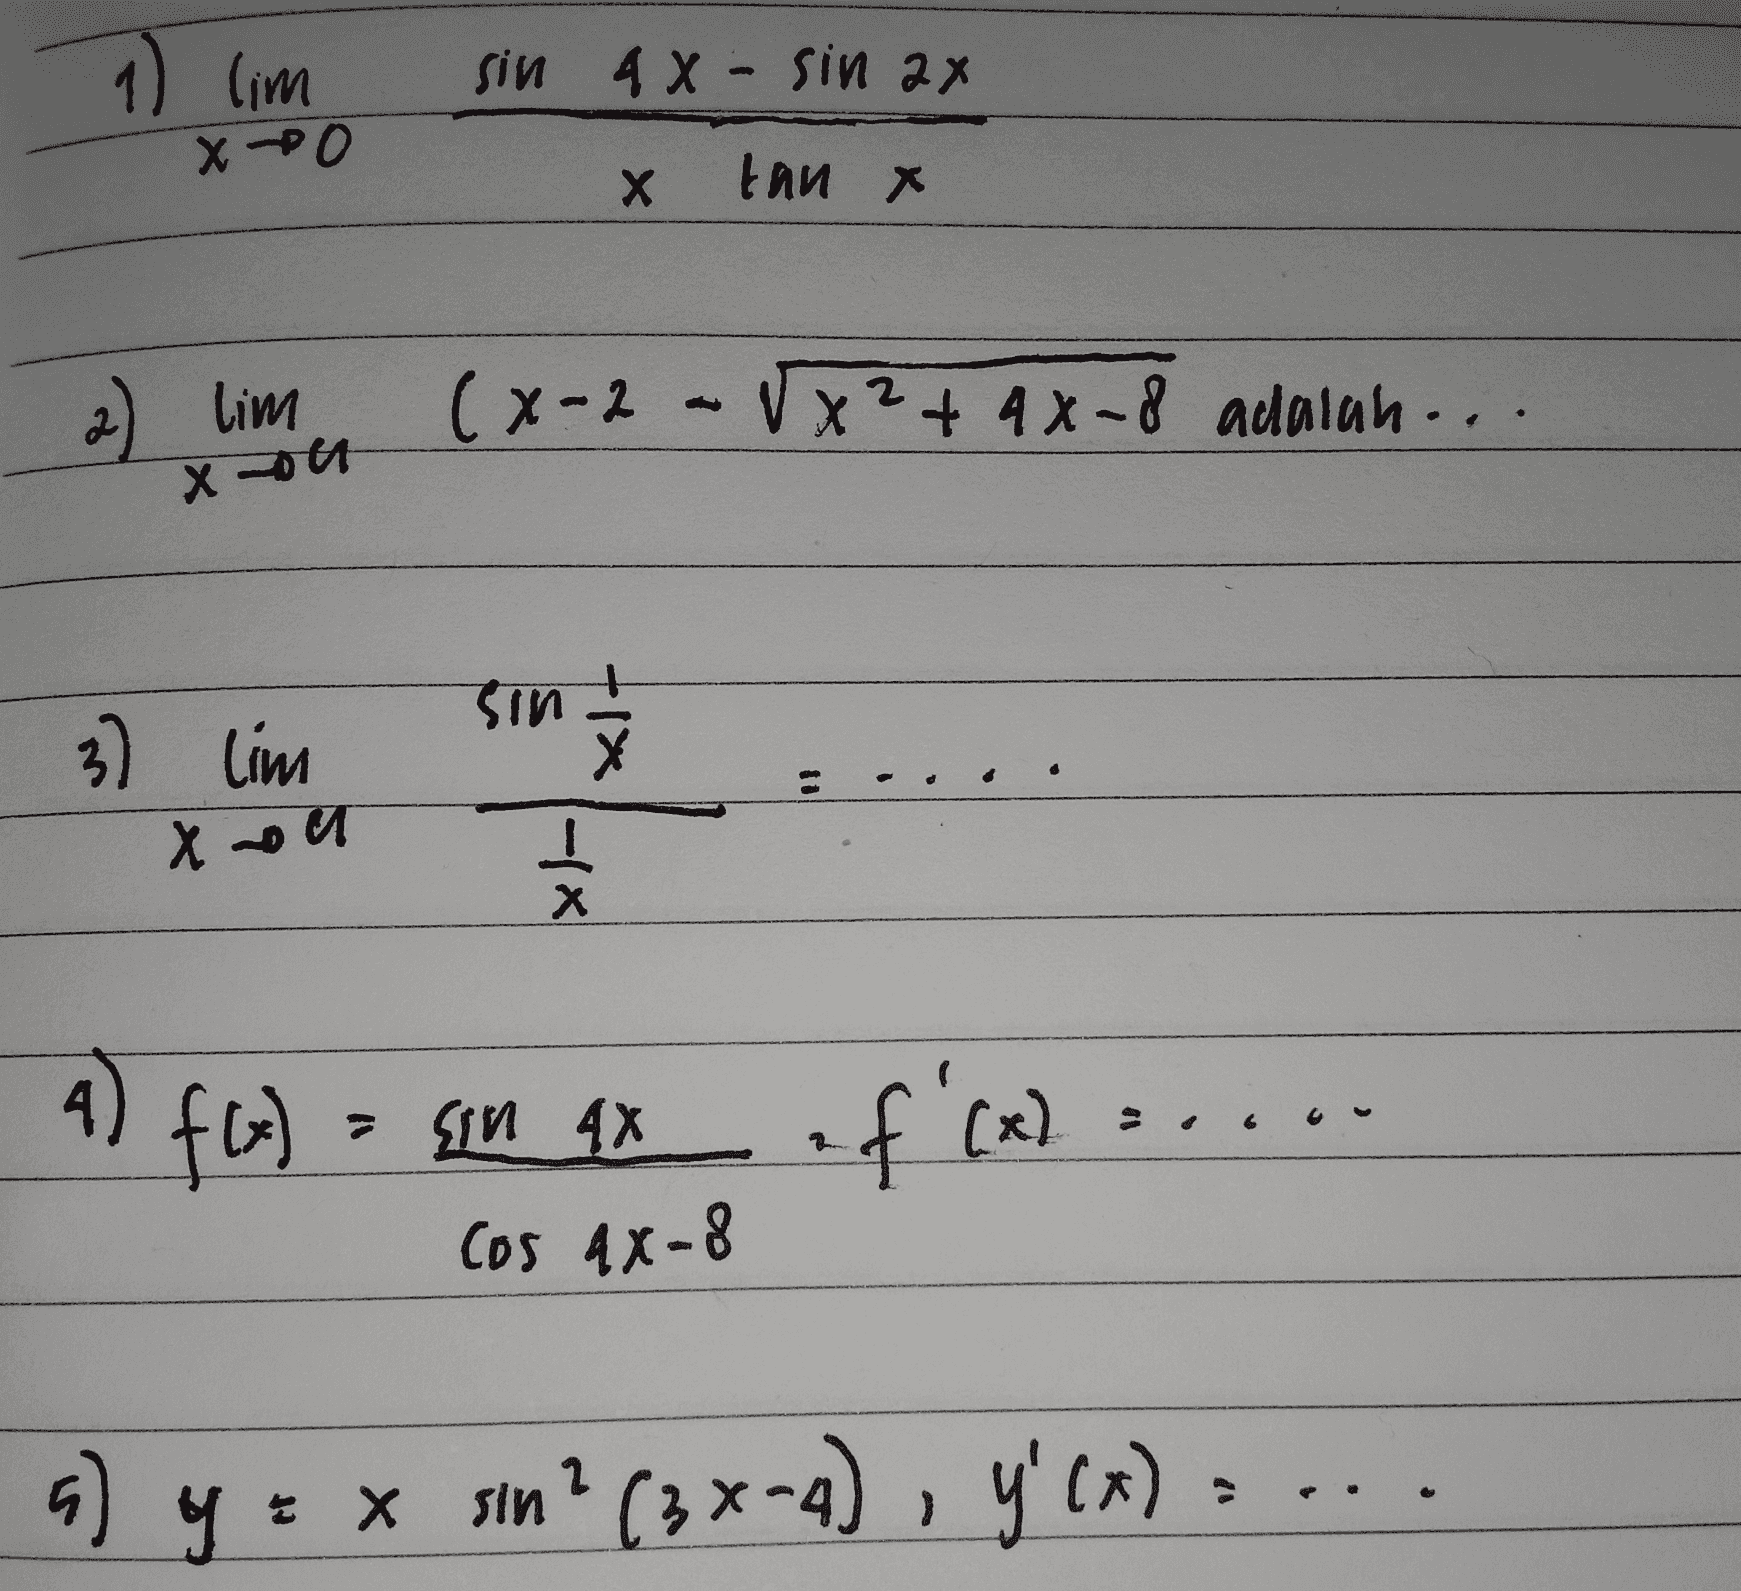 1) lim sin 4 X - sin 2x X PO Х tan x 2) lim (x-2 - Vx² + 4x-8 adalah... xon sin 3) Lim Xoll -IX 4) A) f(x) XI nis = f'(x) Cos 4X-8 + x x x sin? (3 x-4), y'(x) = . a) y 